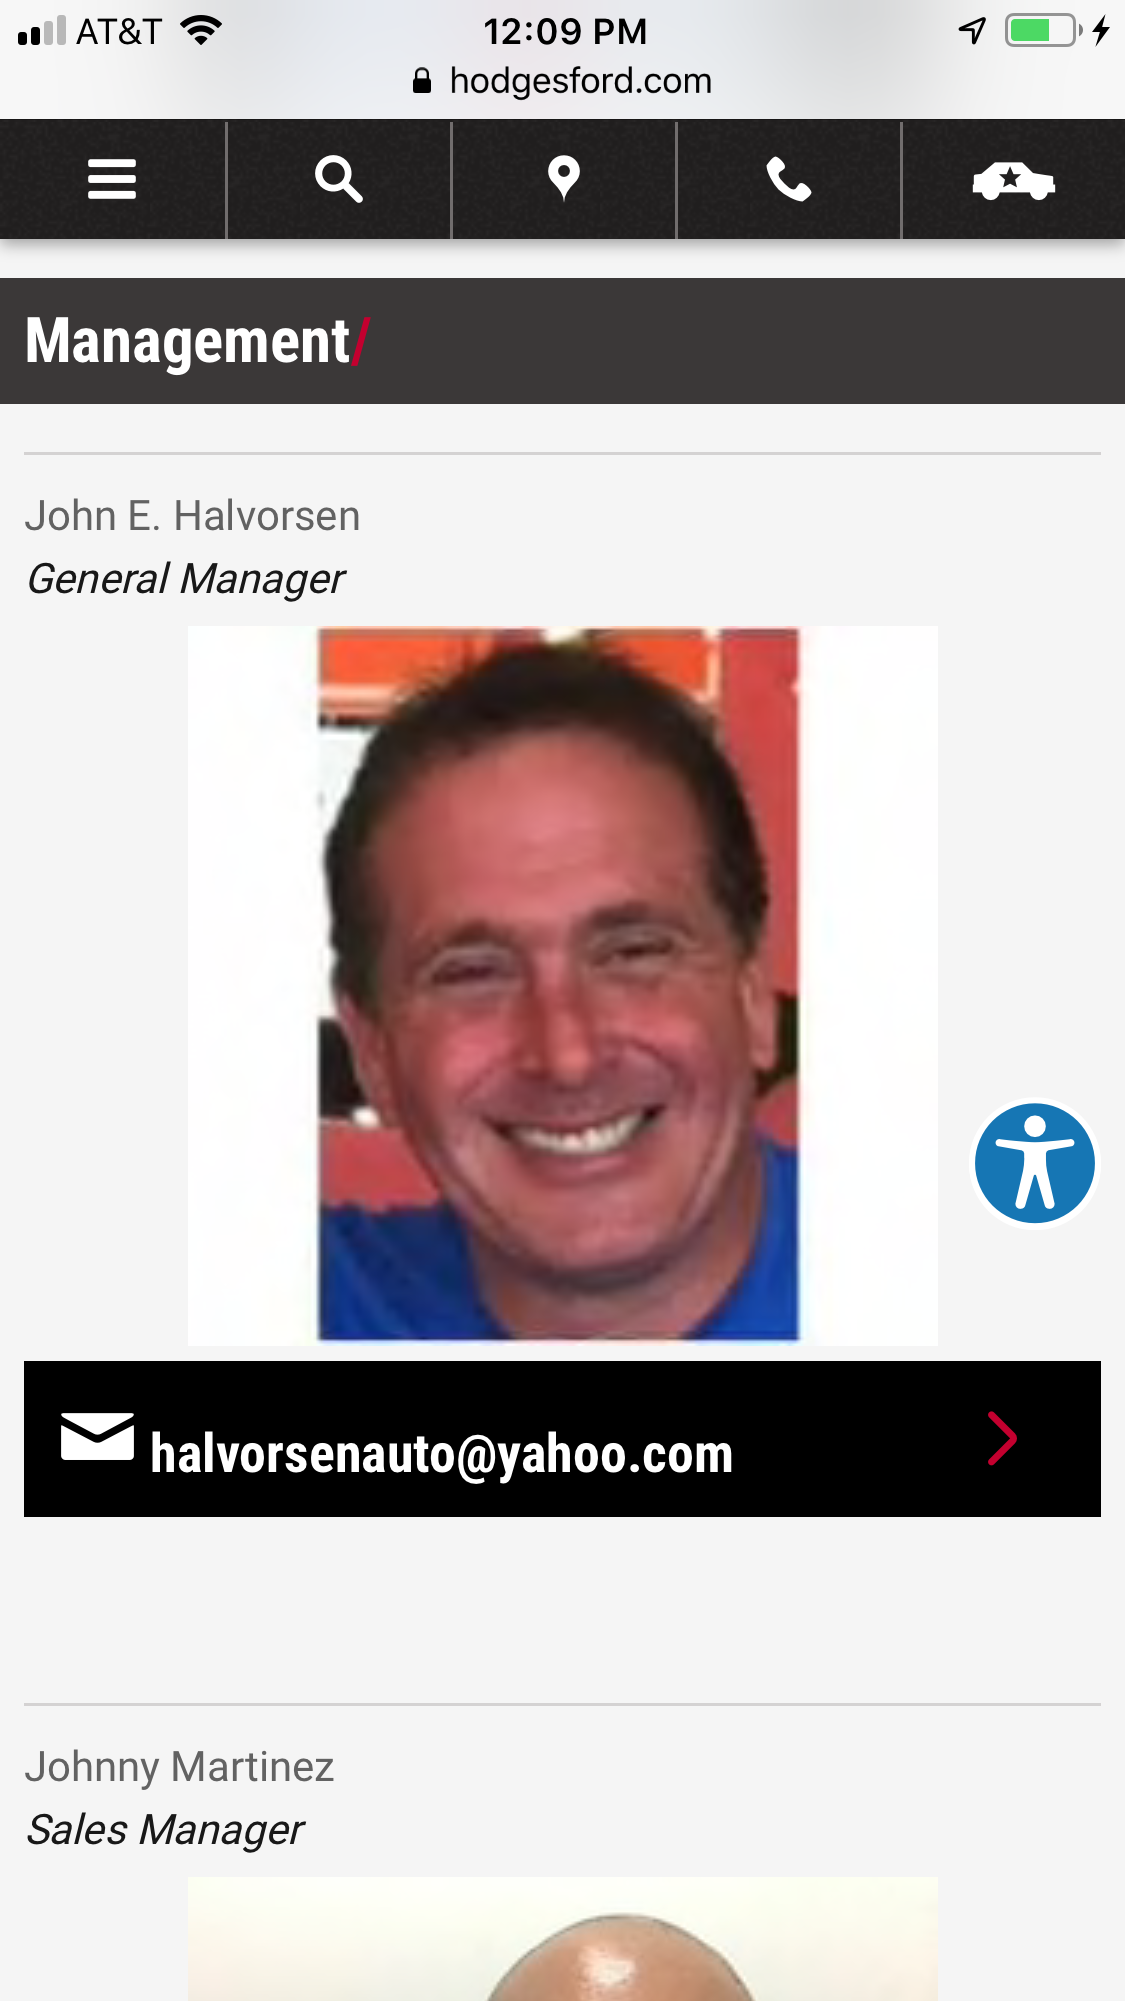  John E. Halvorsen General Manager